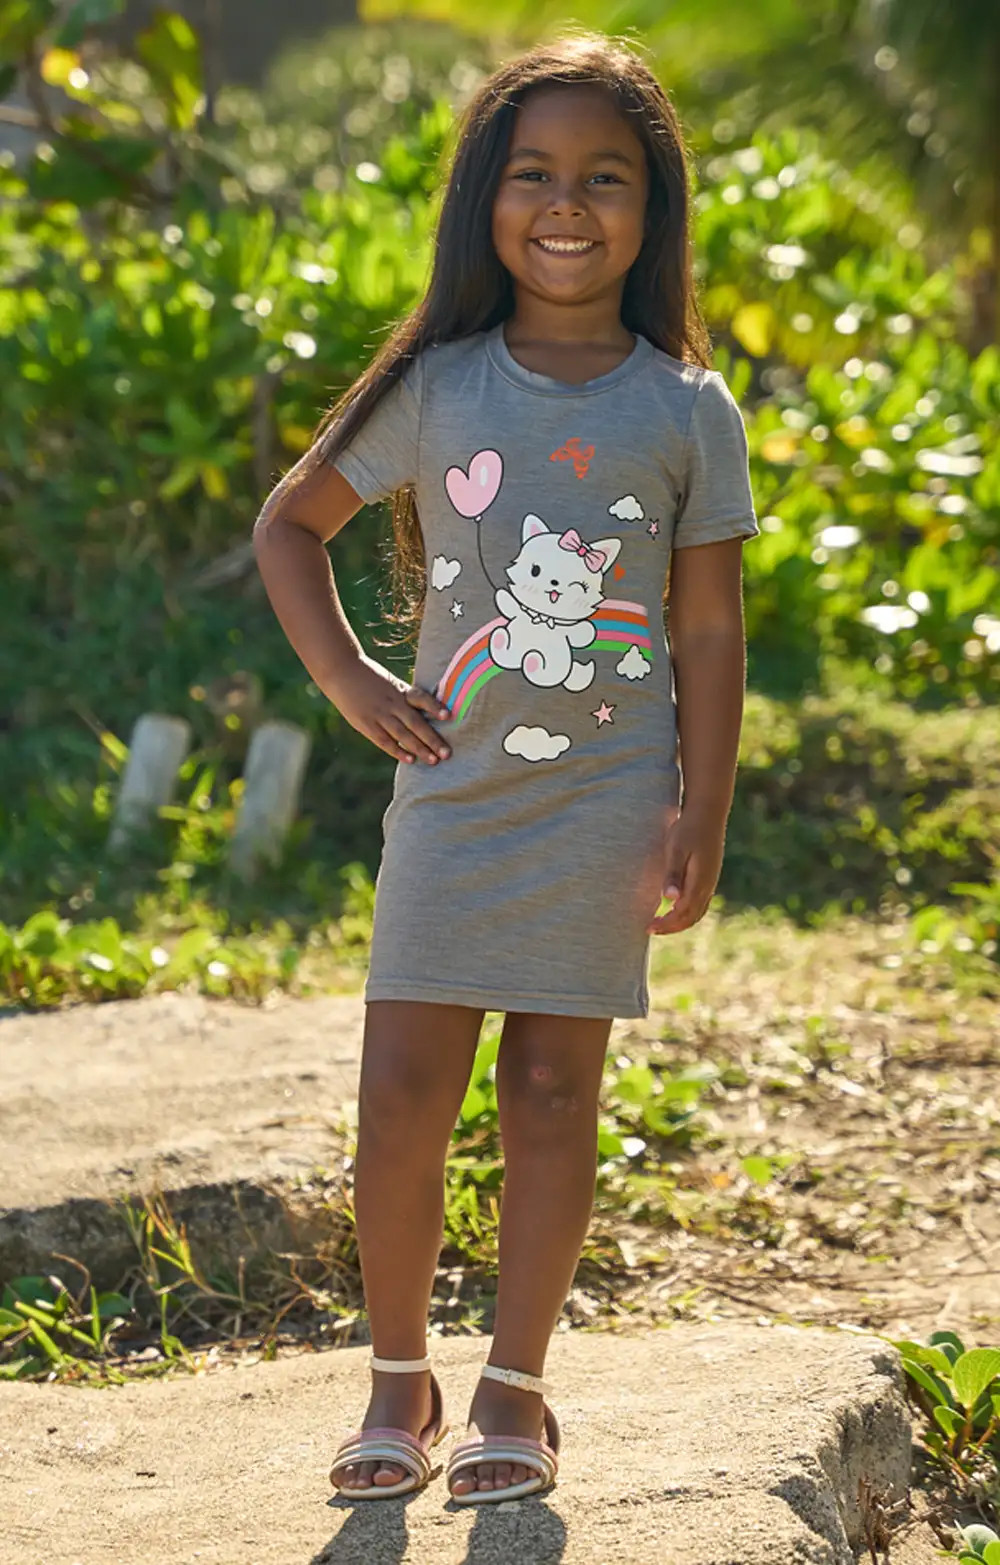 Cette robe t-shirt pour fillette est idéale pour le jeu et les aventures quotidiennes. Fabriquée dans un tissu doux et extensible, elle assure confort et liberté de mouvement tout en ajoutant une touche de fantaisie à la garde-robe de votre enfant.